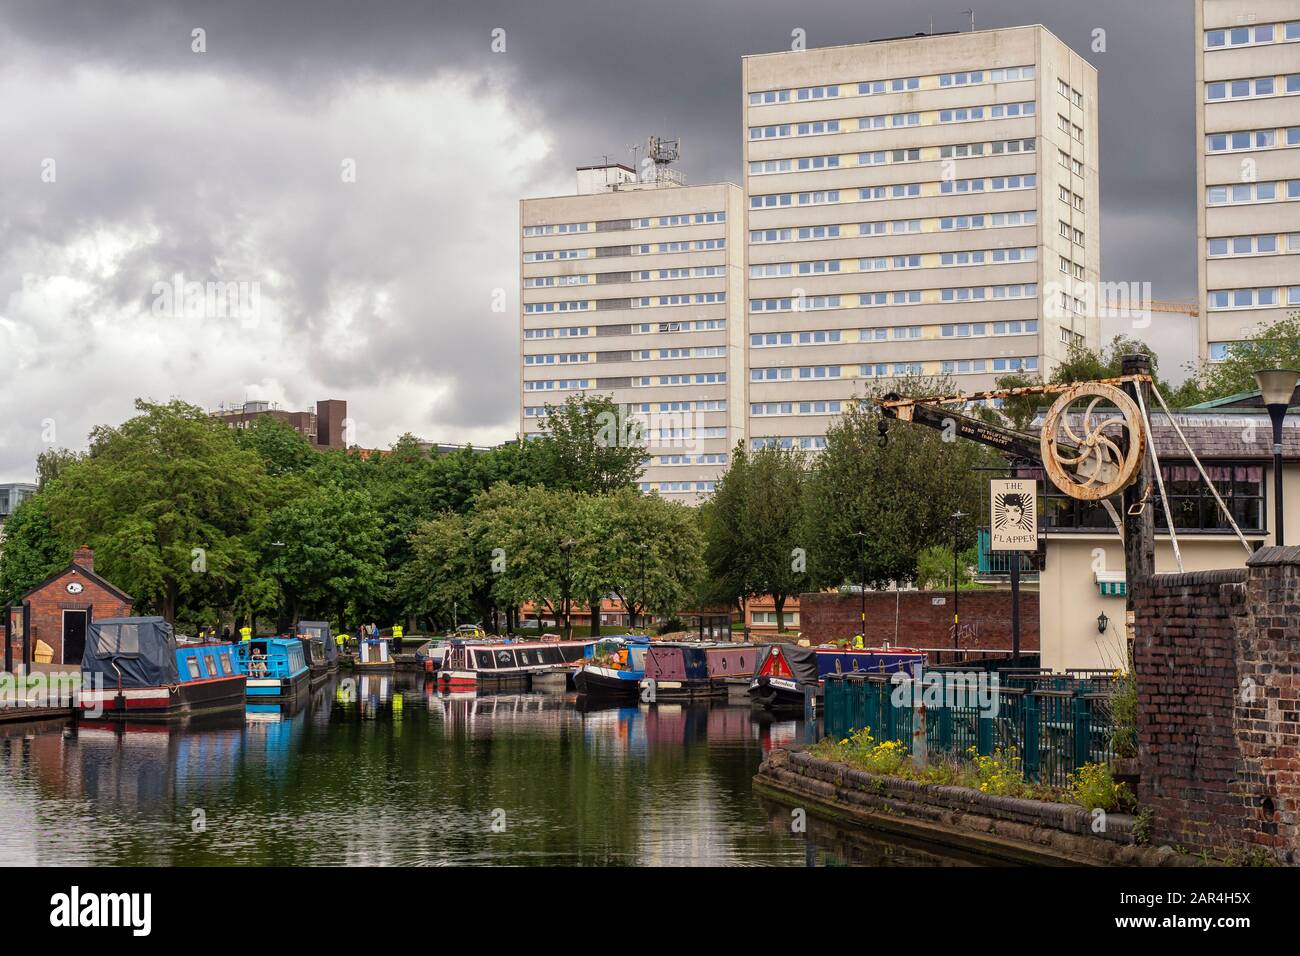 BIRMINGHAM, Regno Unito - 28 MAGGIO 2019: Vista del canale sovrastato dagli edifici di appartamenti Foto Stock